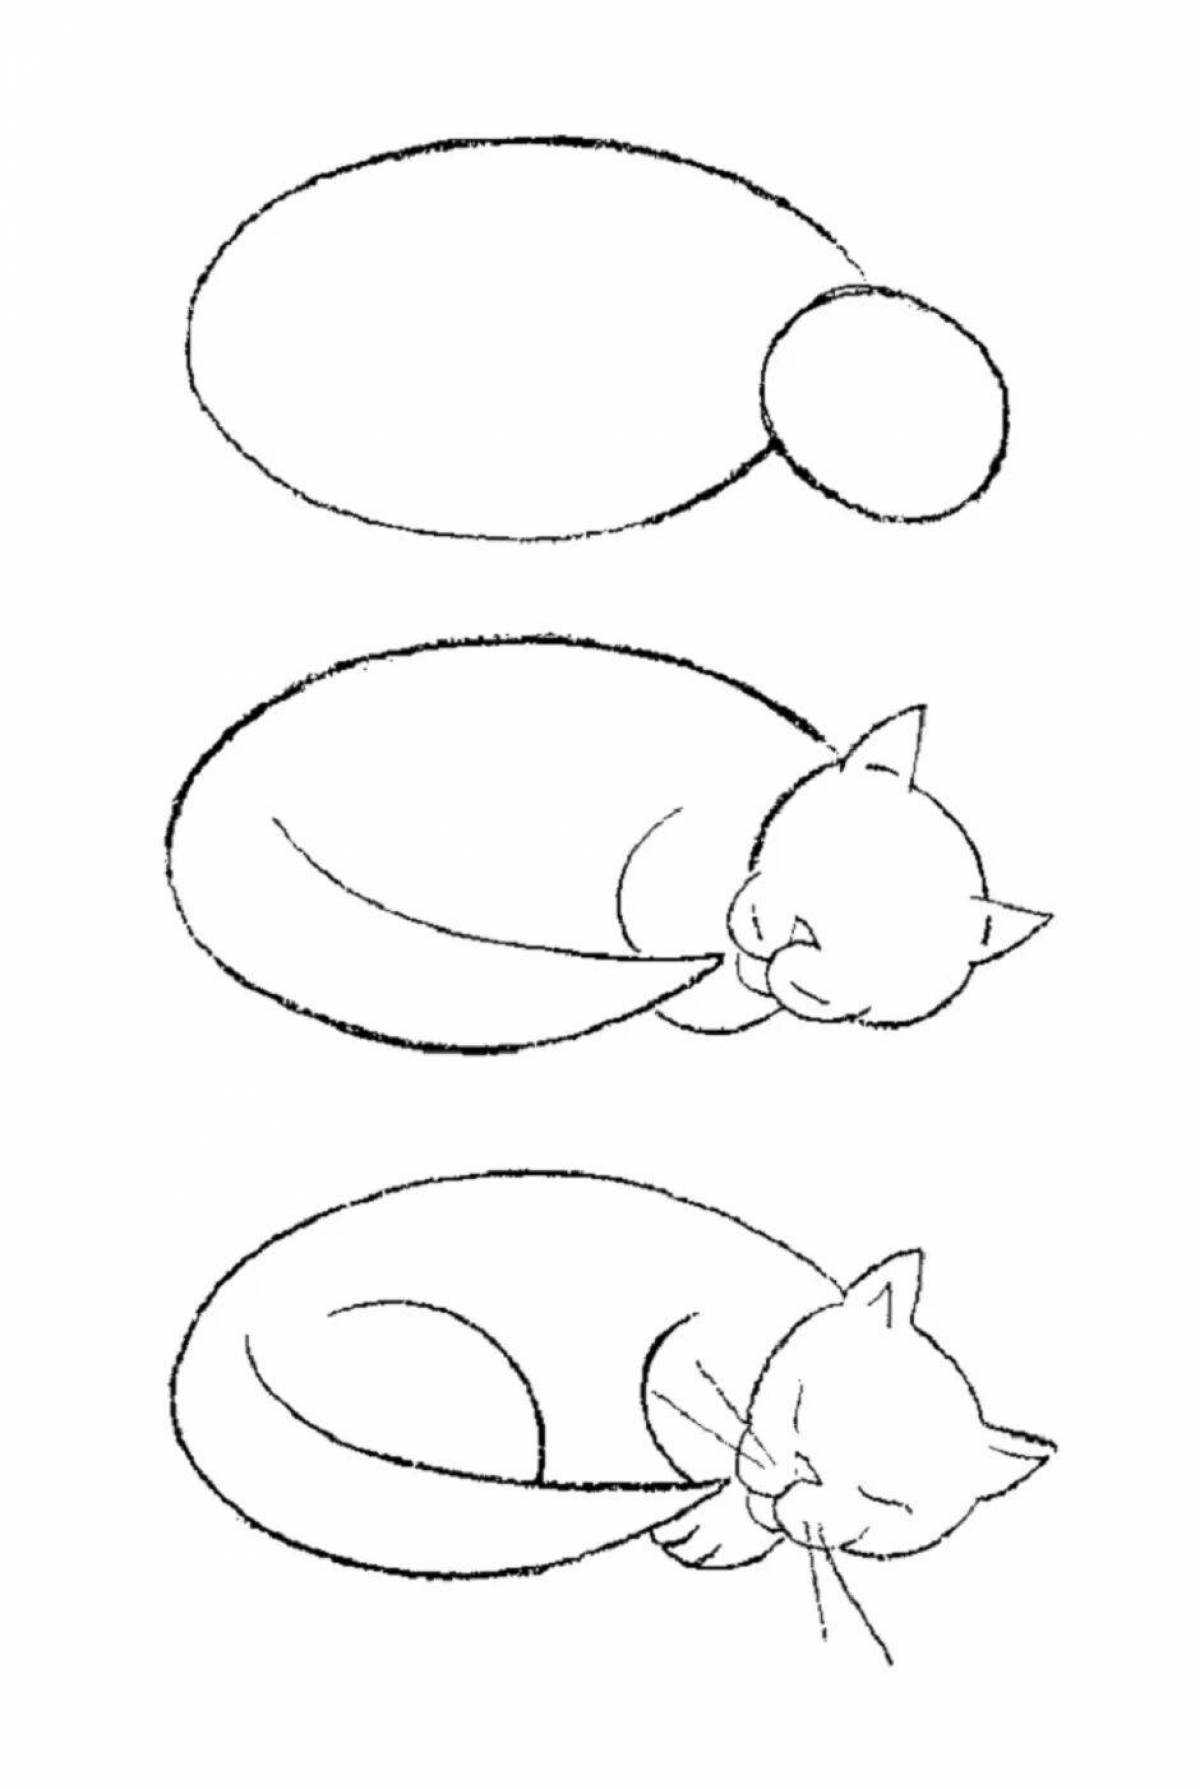 Нарисовать кошку поэтапно для детей. Пошаговое рисование для детей. Рисуем кошку. Простые поэтапные рисунки. Пошаговое рисование кота.